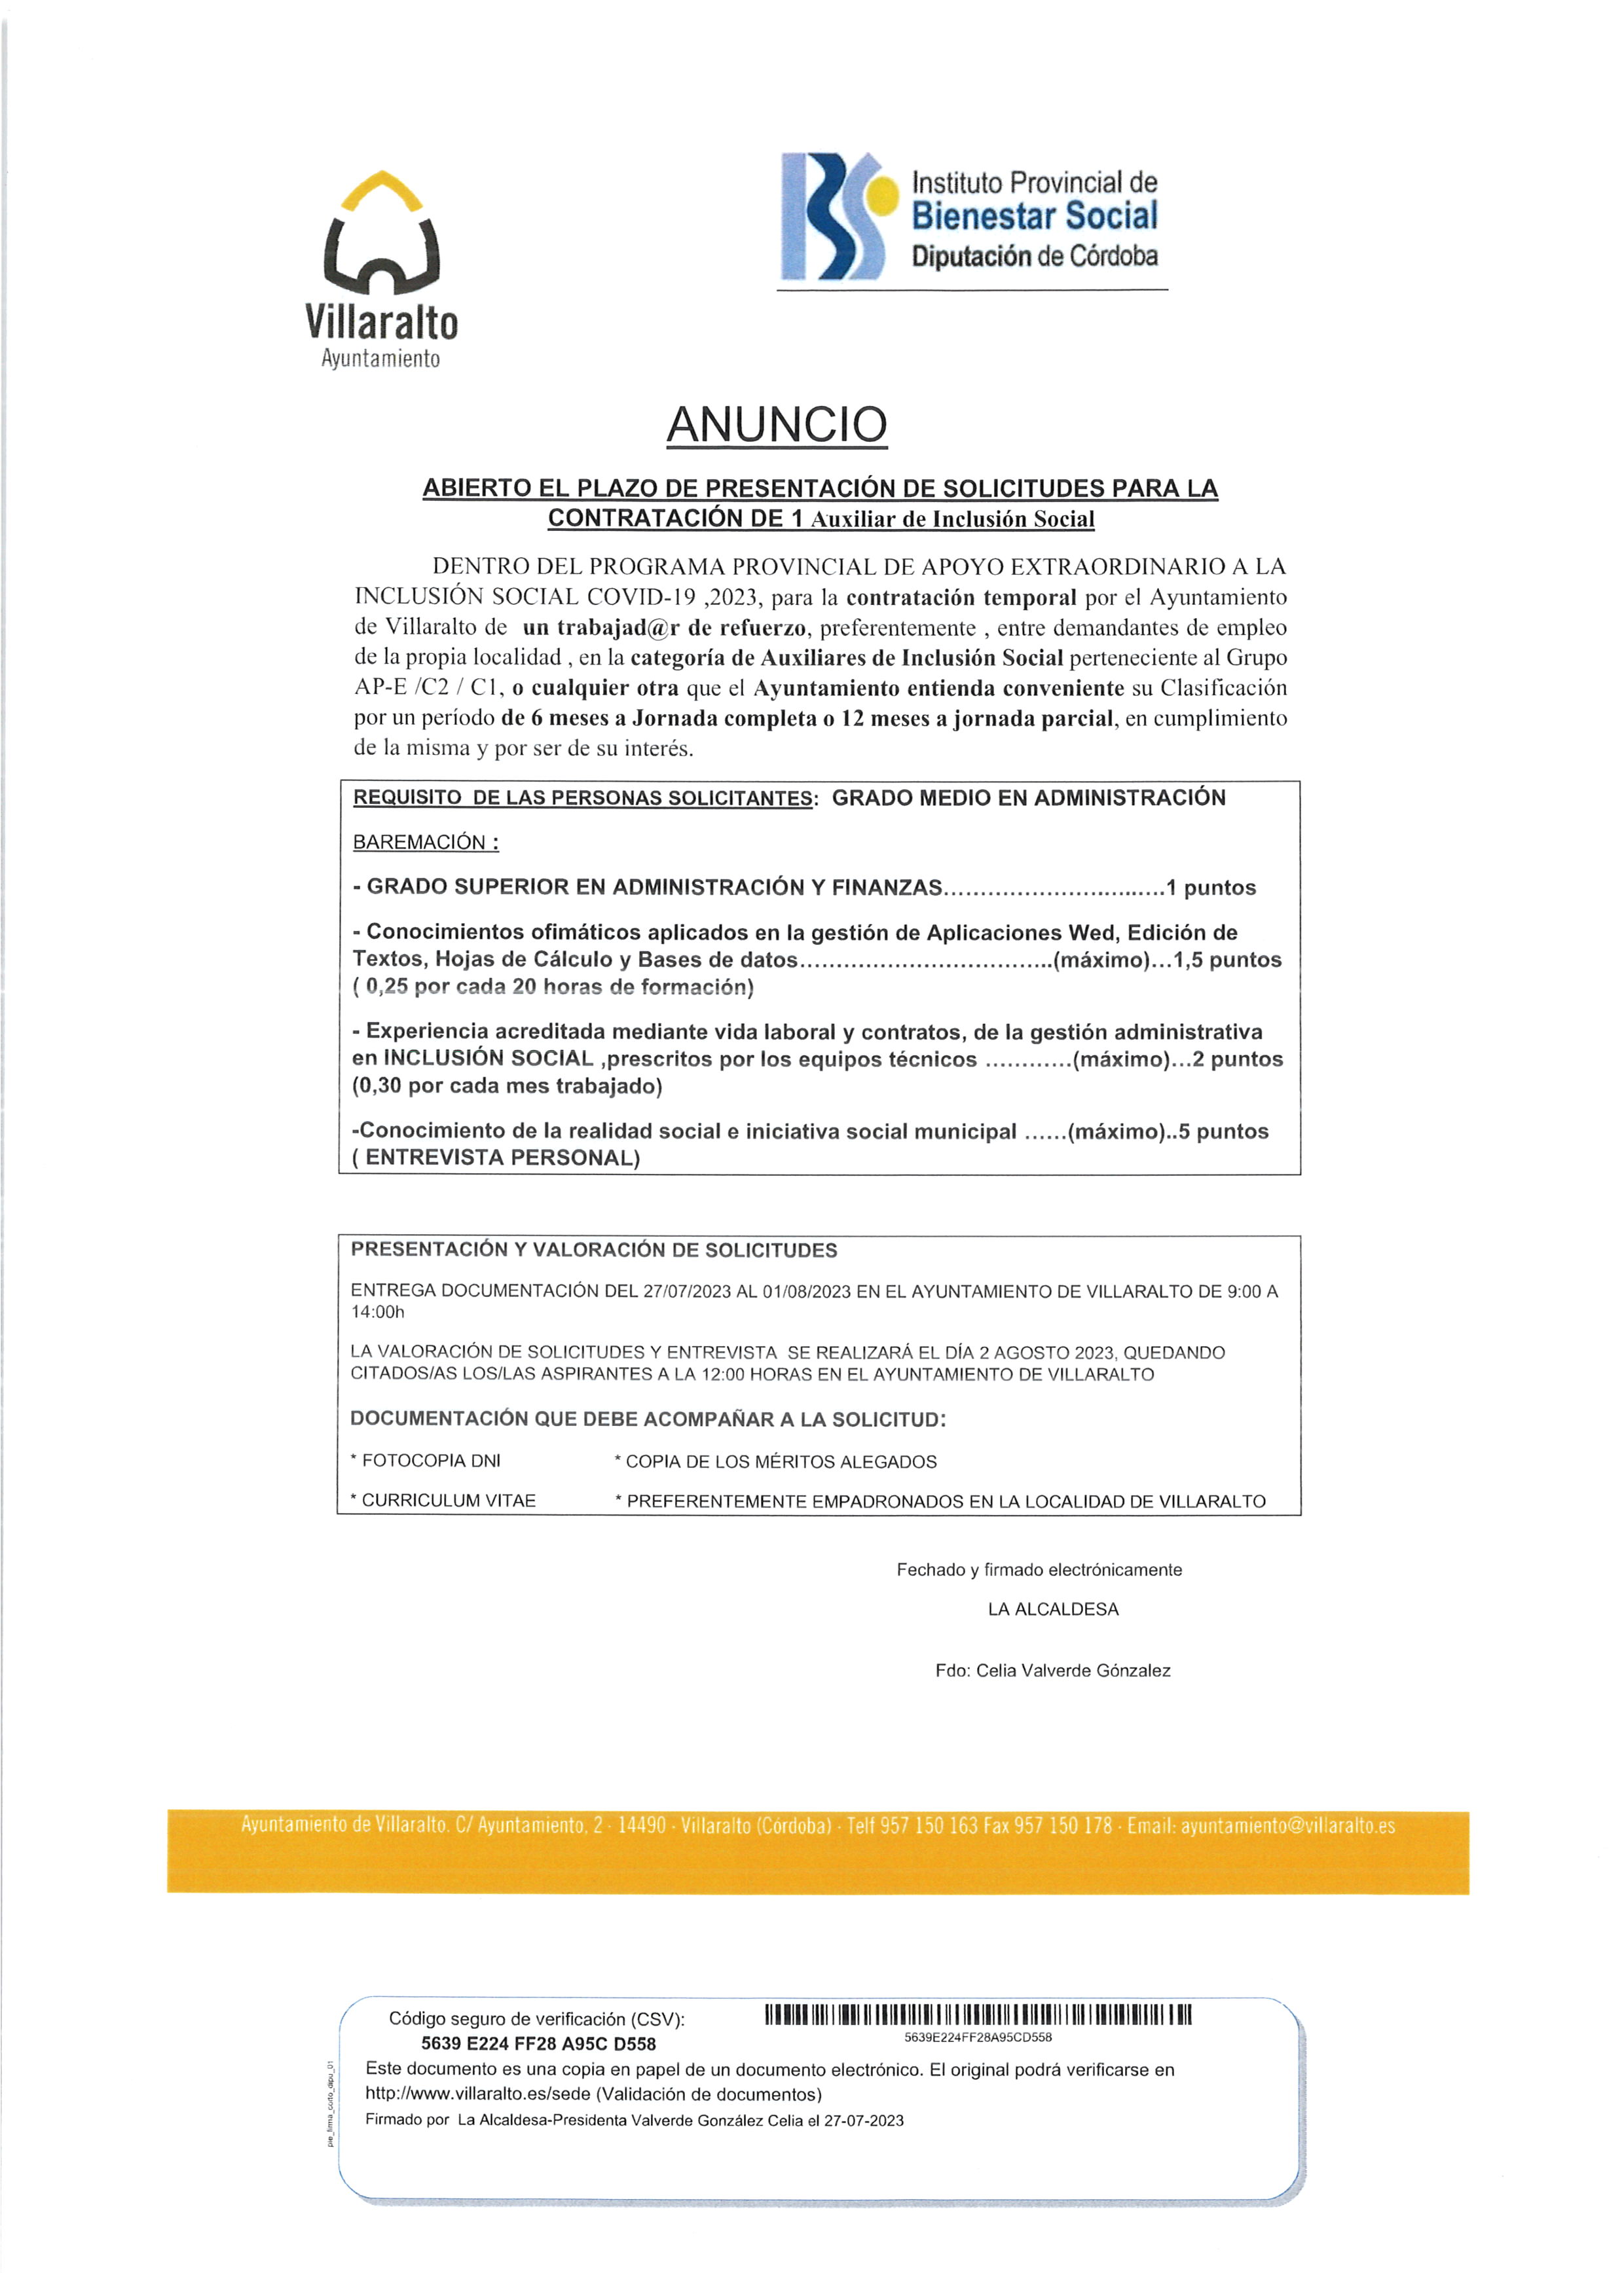 El Ayuntamiento de Villaralto convoca proceso de contratación para Auxiliar de Inclusión Social. ¡Participa!